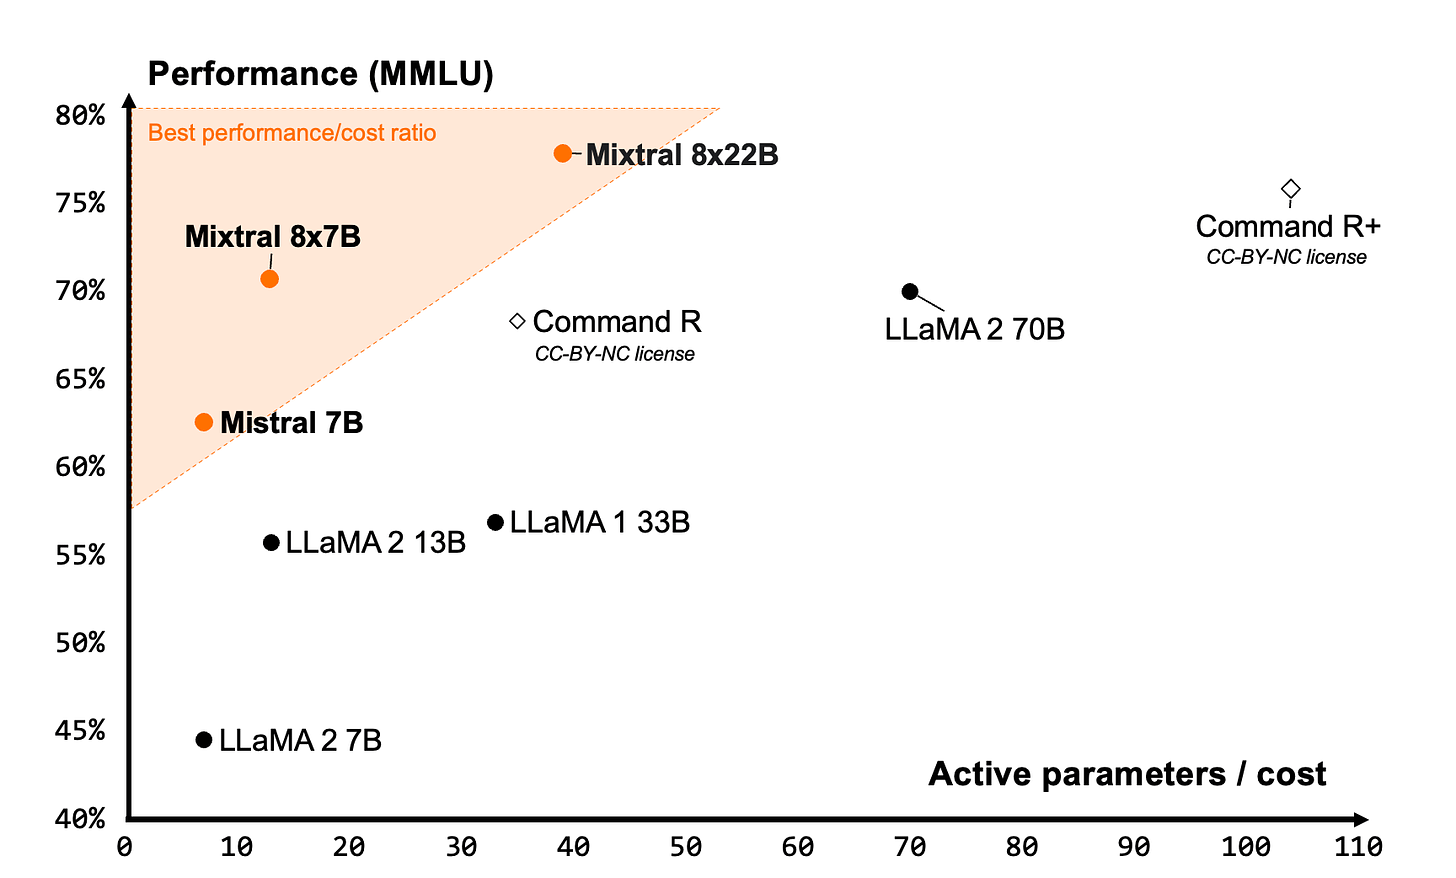 MMLU of Mixtral 8x22b